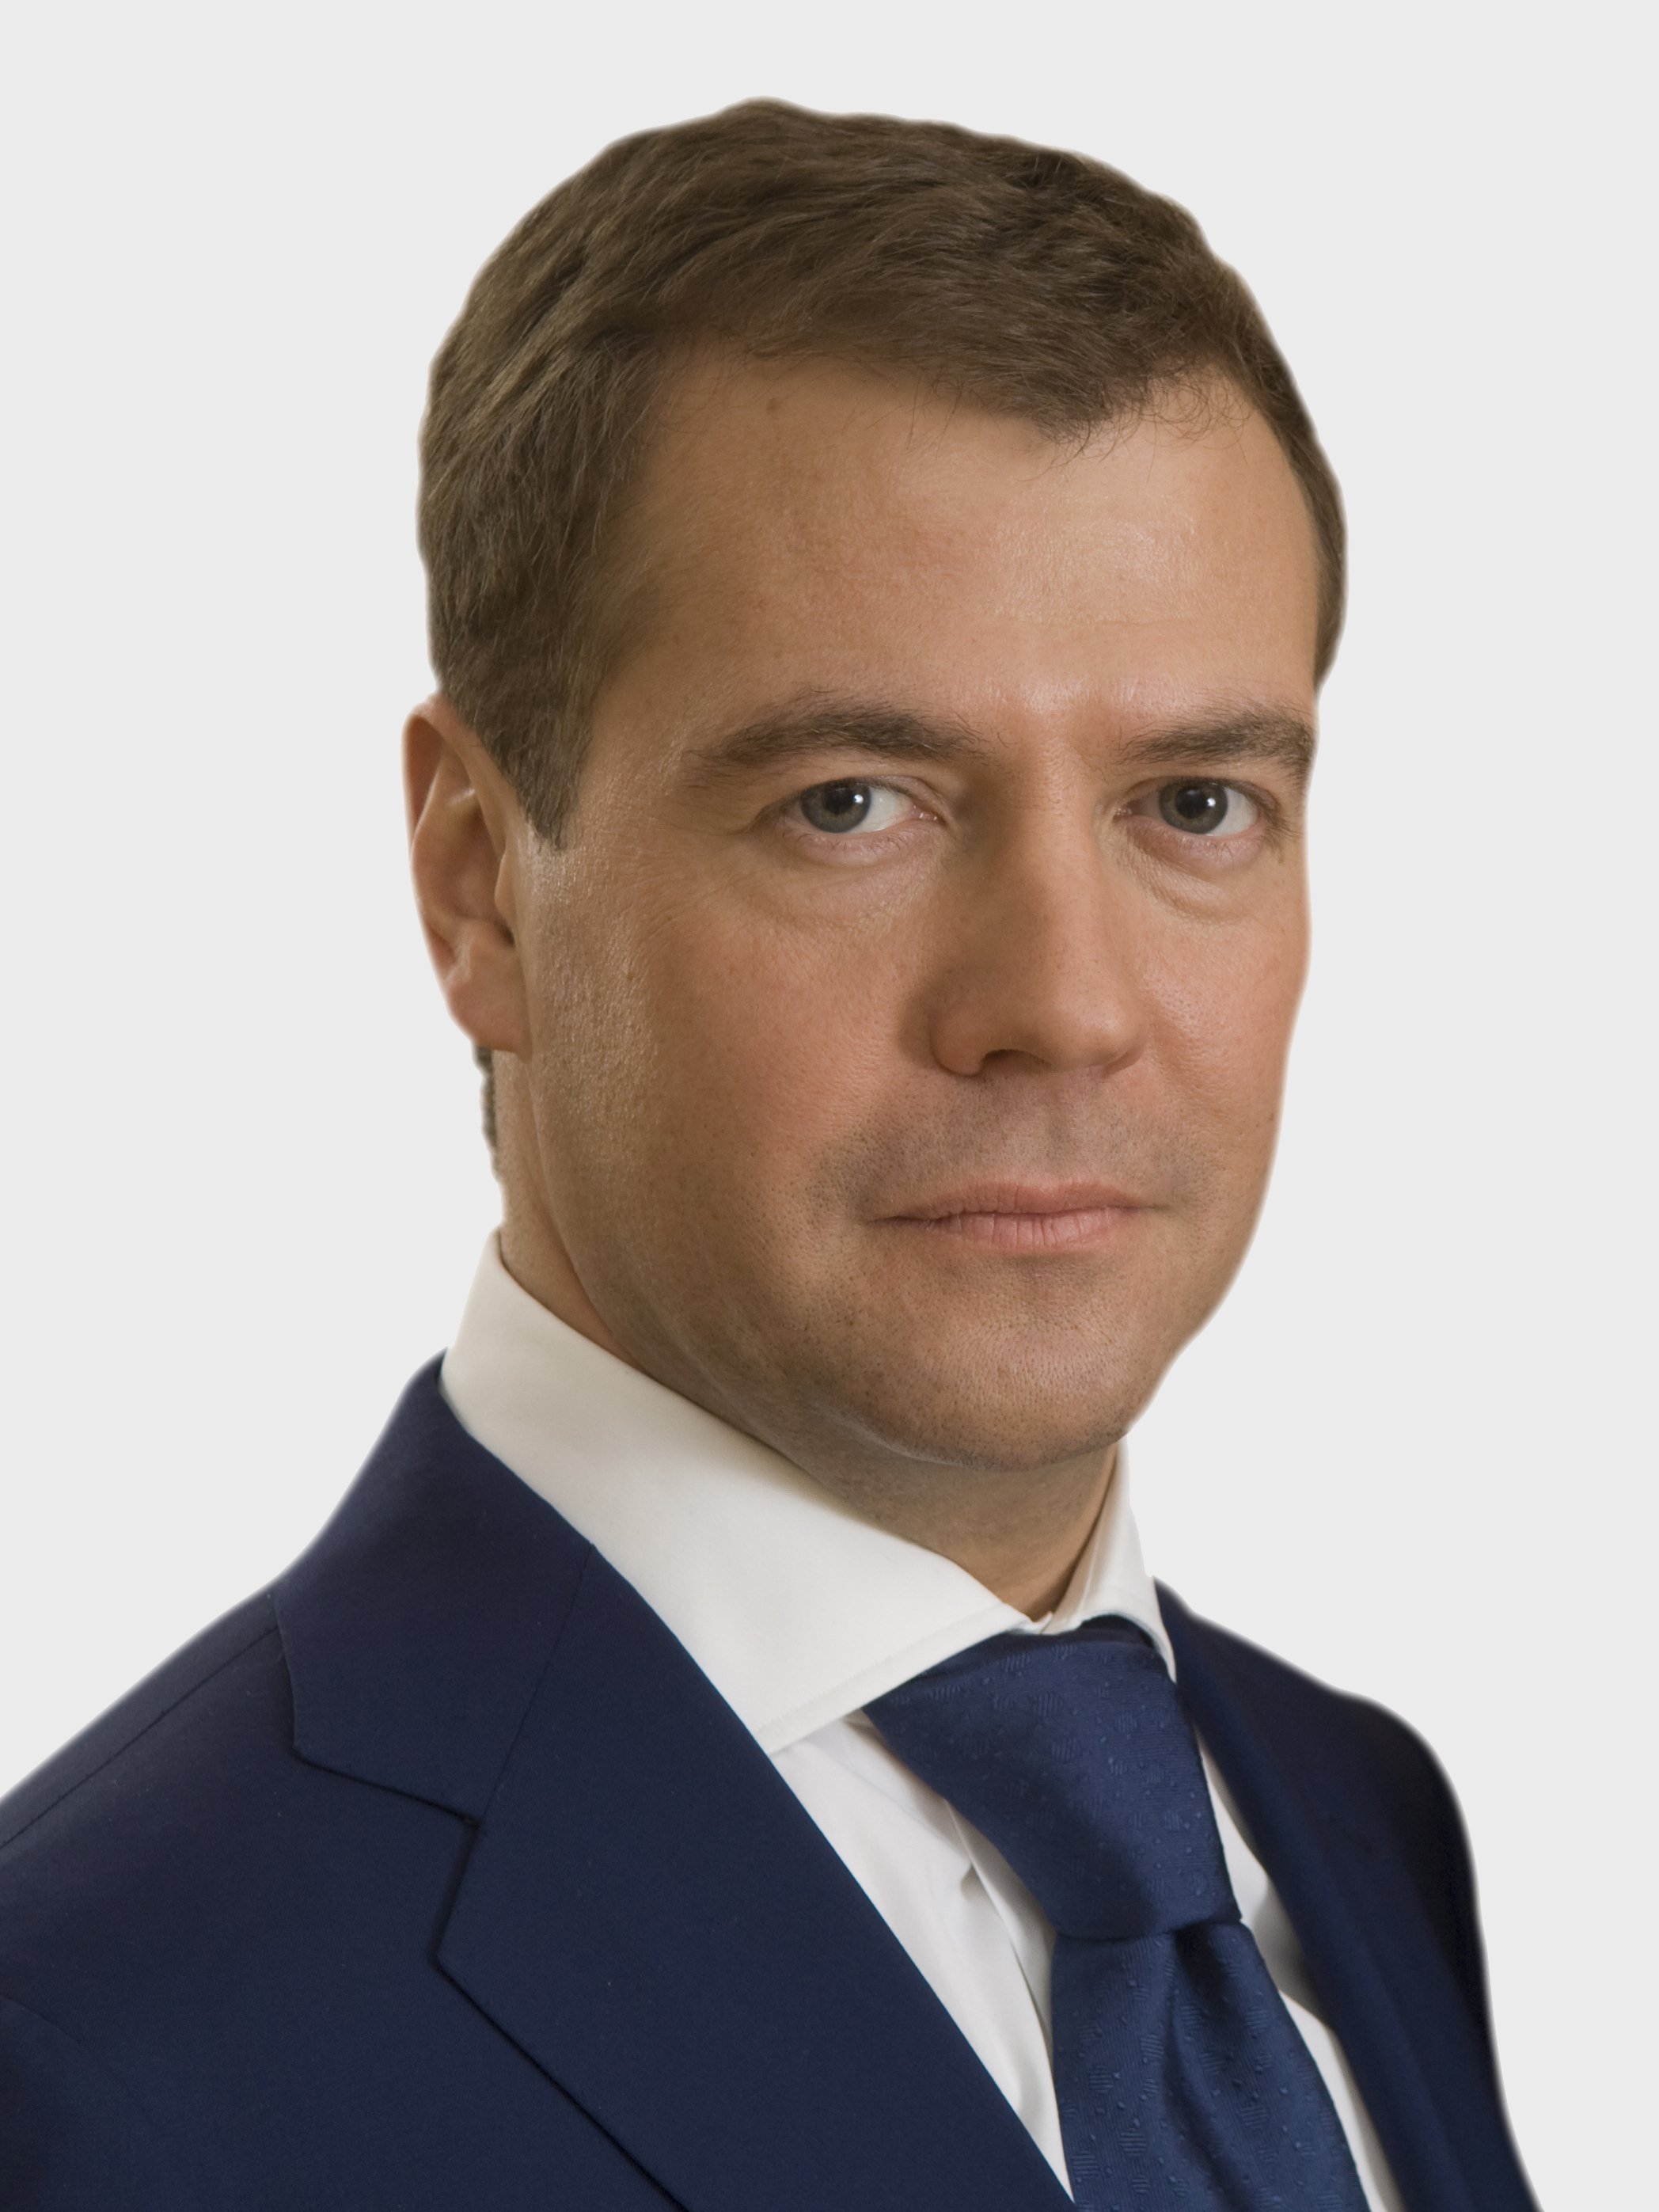 Дмитрий Медведев и его фигура: искусство грации в кадре